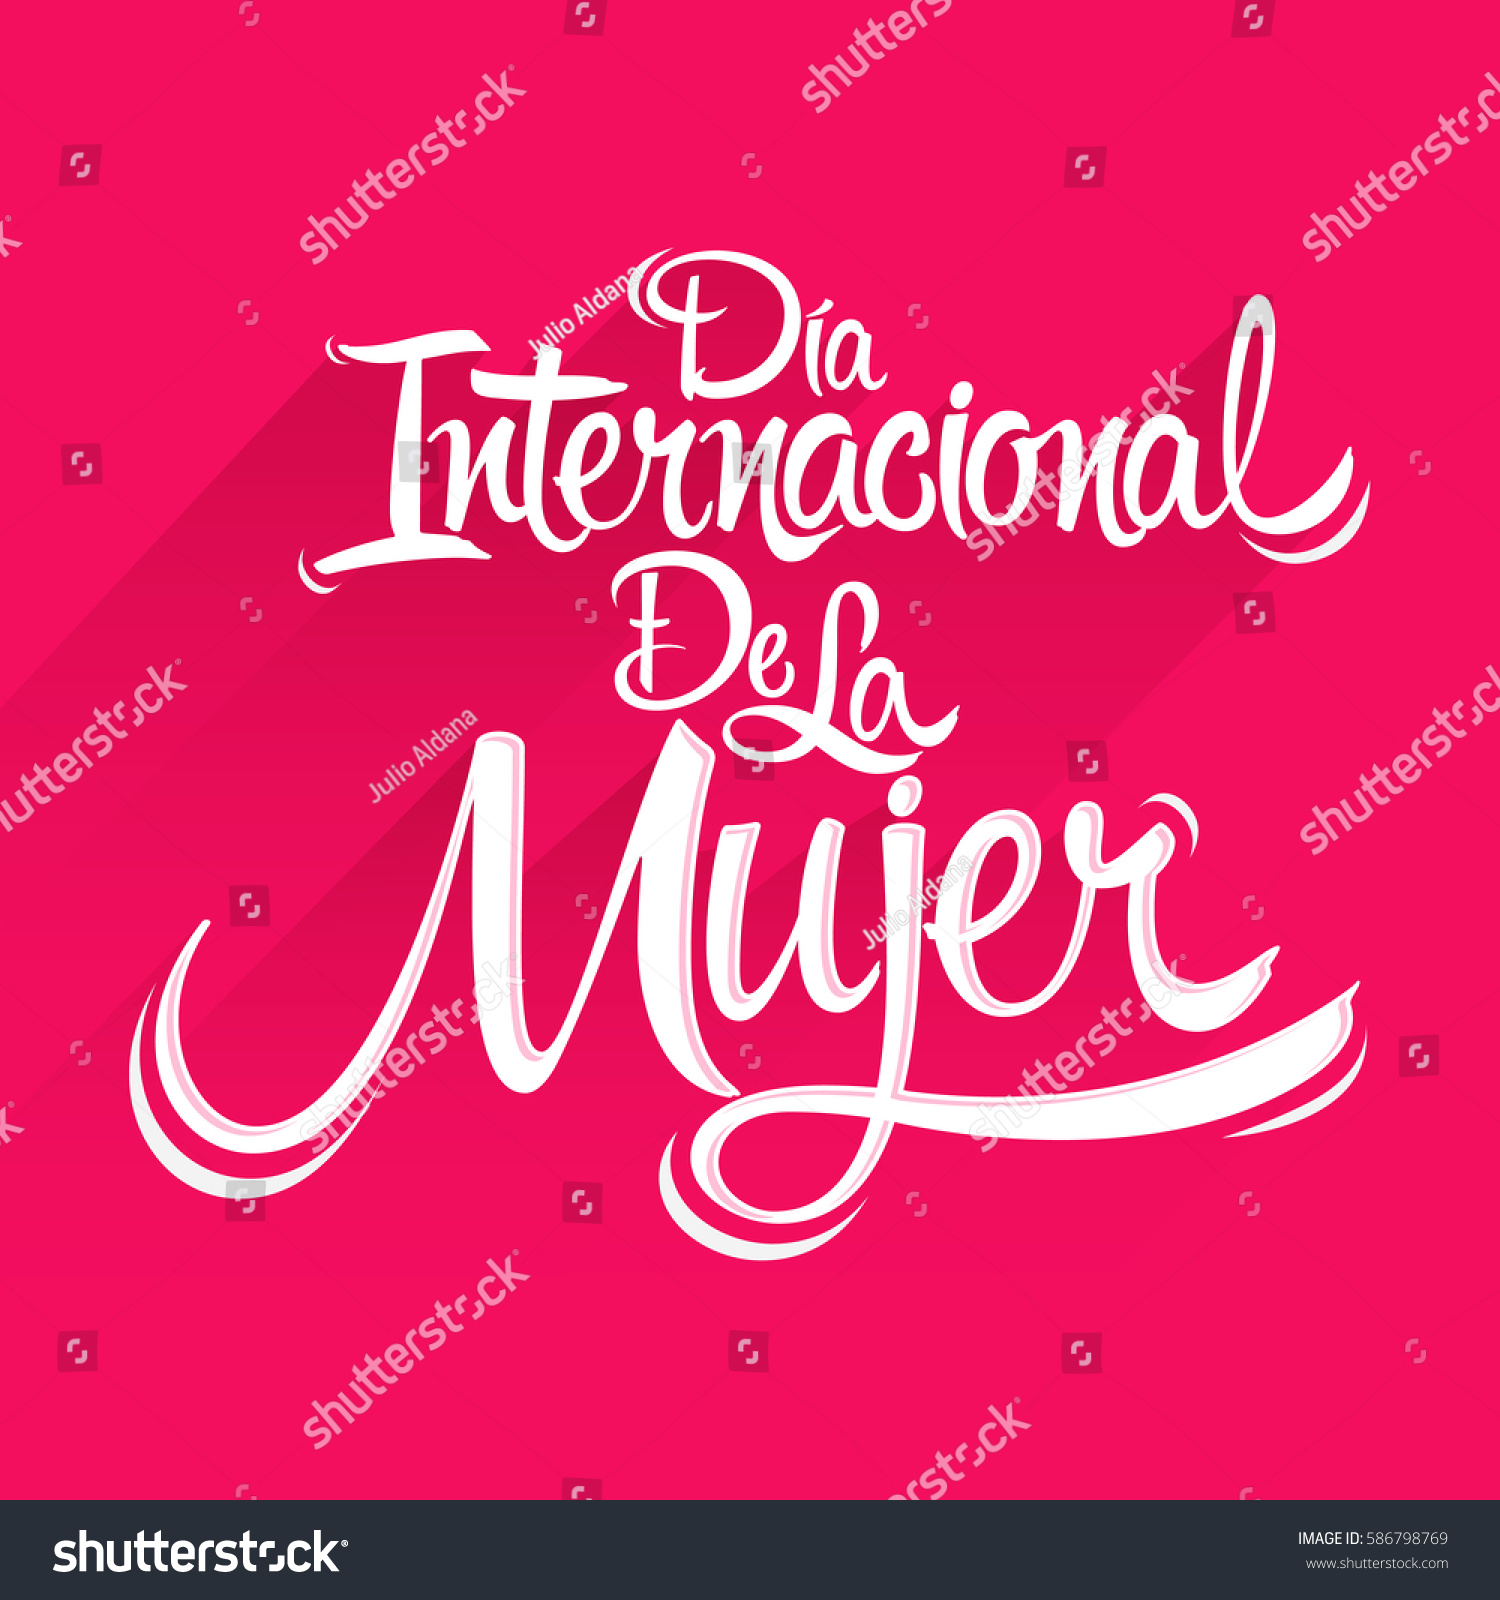 Dia Internacional De La Mujer Spanish Stock Vector Royalty Free 586798769